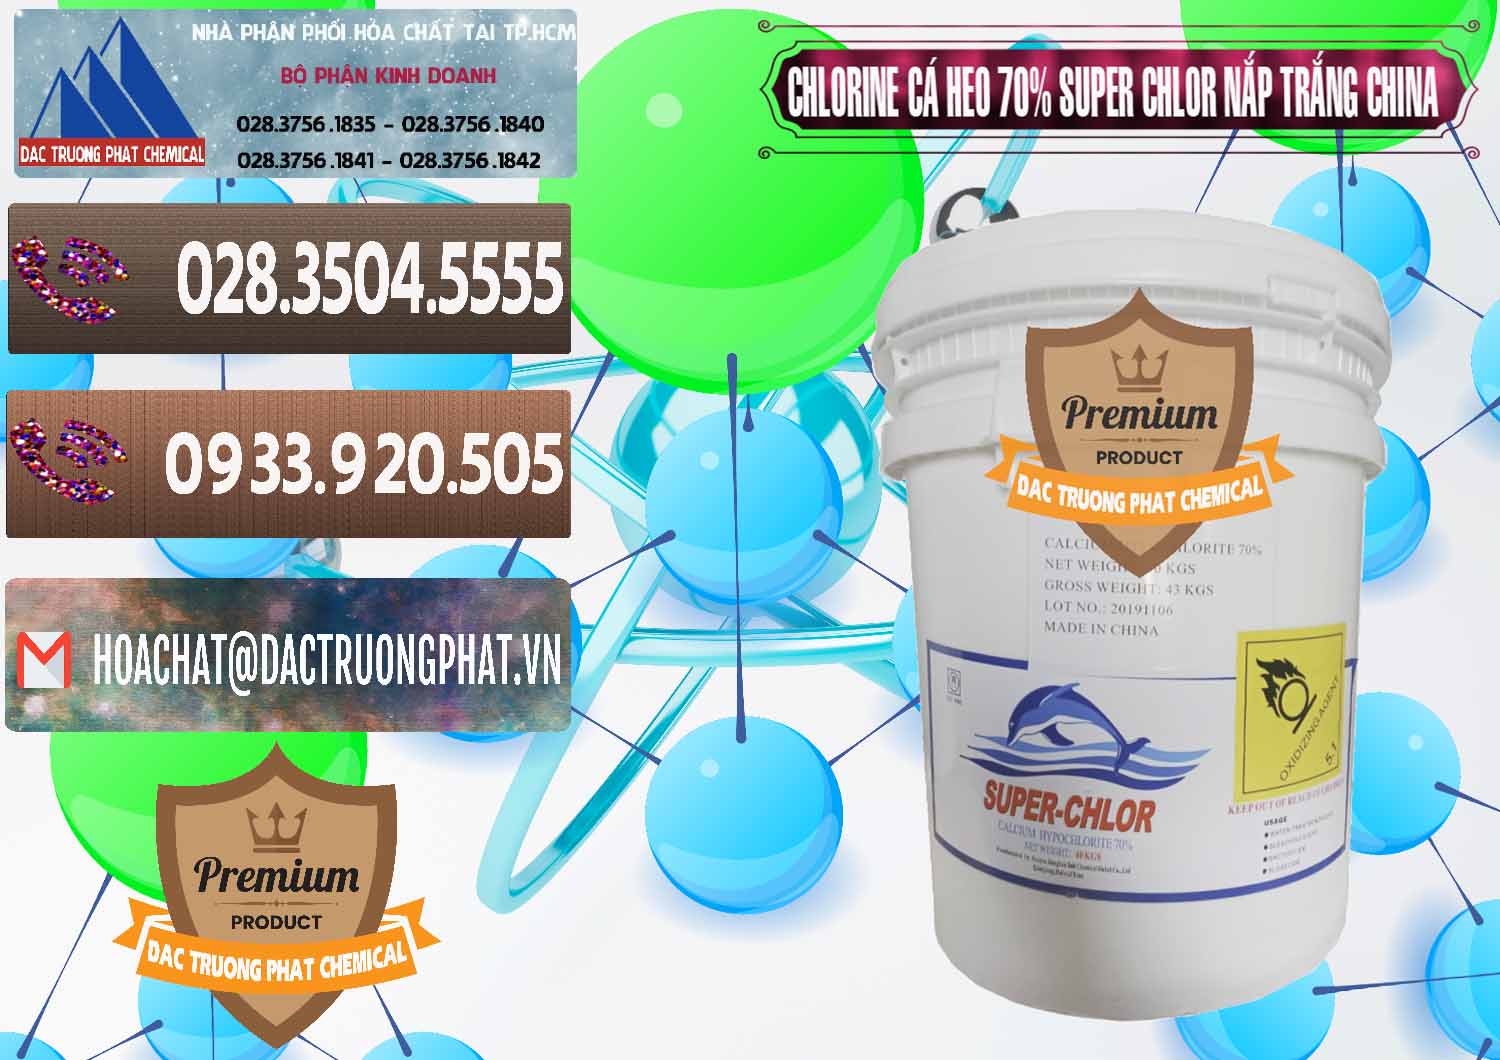 Nơi bán và cung cấp Clorin - Chlorine Cá Heo 70% Super Chlor Nắp Trắng Trung Quốc China - 0240 - Nơi chuyên nhập khẩu - phân phối hóa chất tại TP.HCM - hoachatviet.net